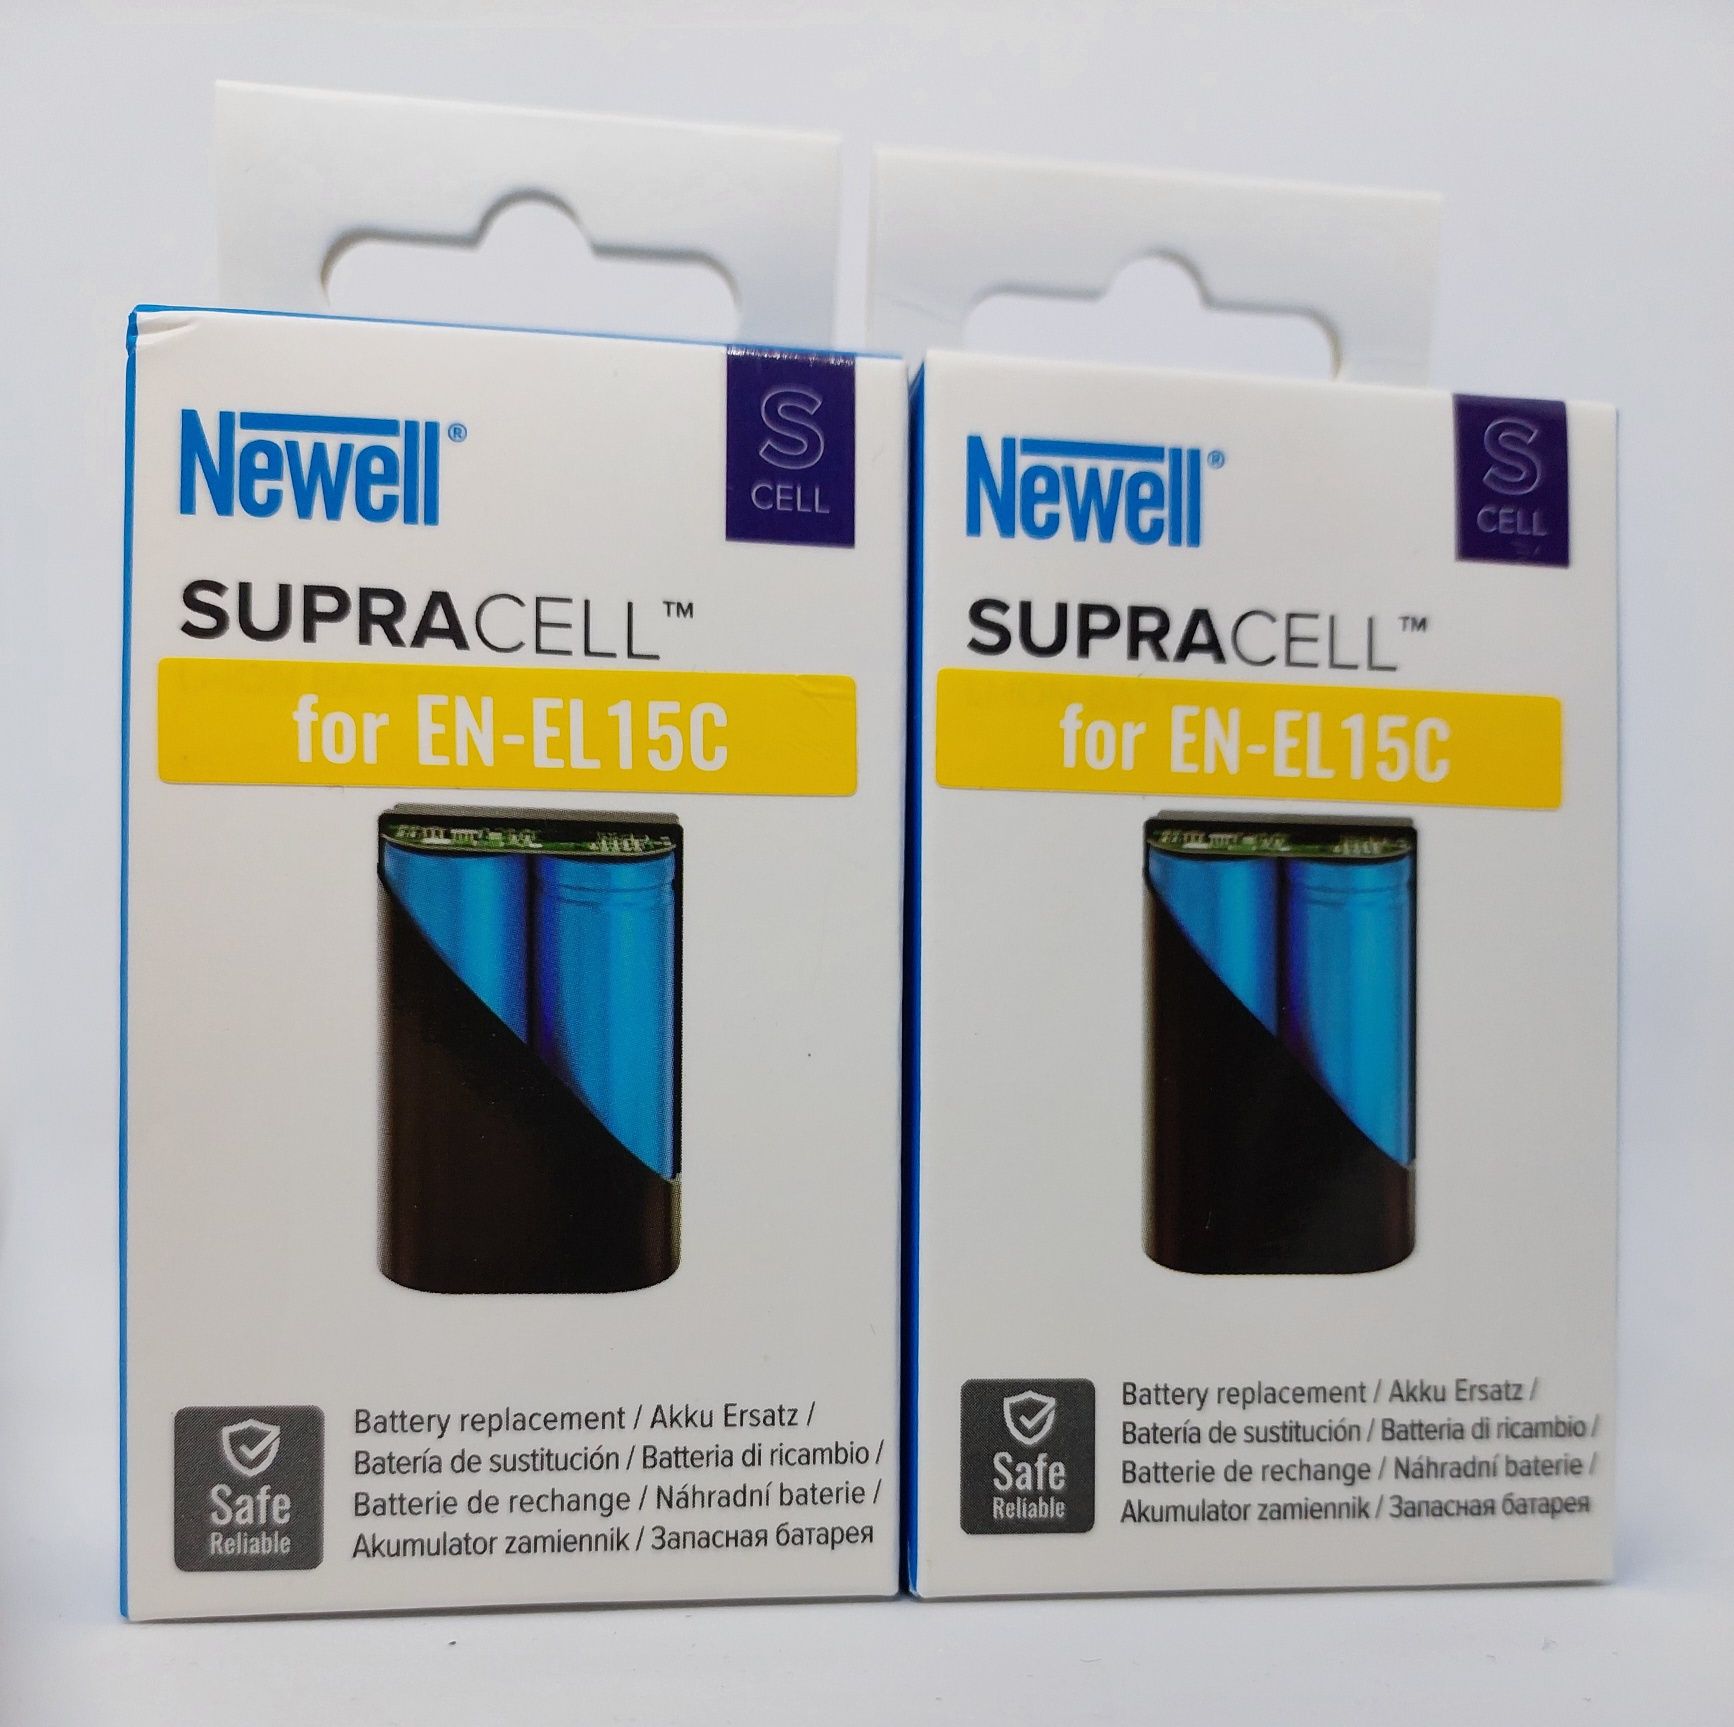 Батарея Newell SupraCell EN-EL15C.Нові. Гарантія 40 місяців.